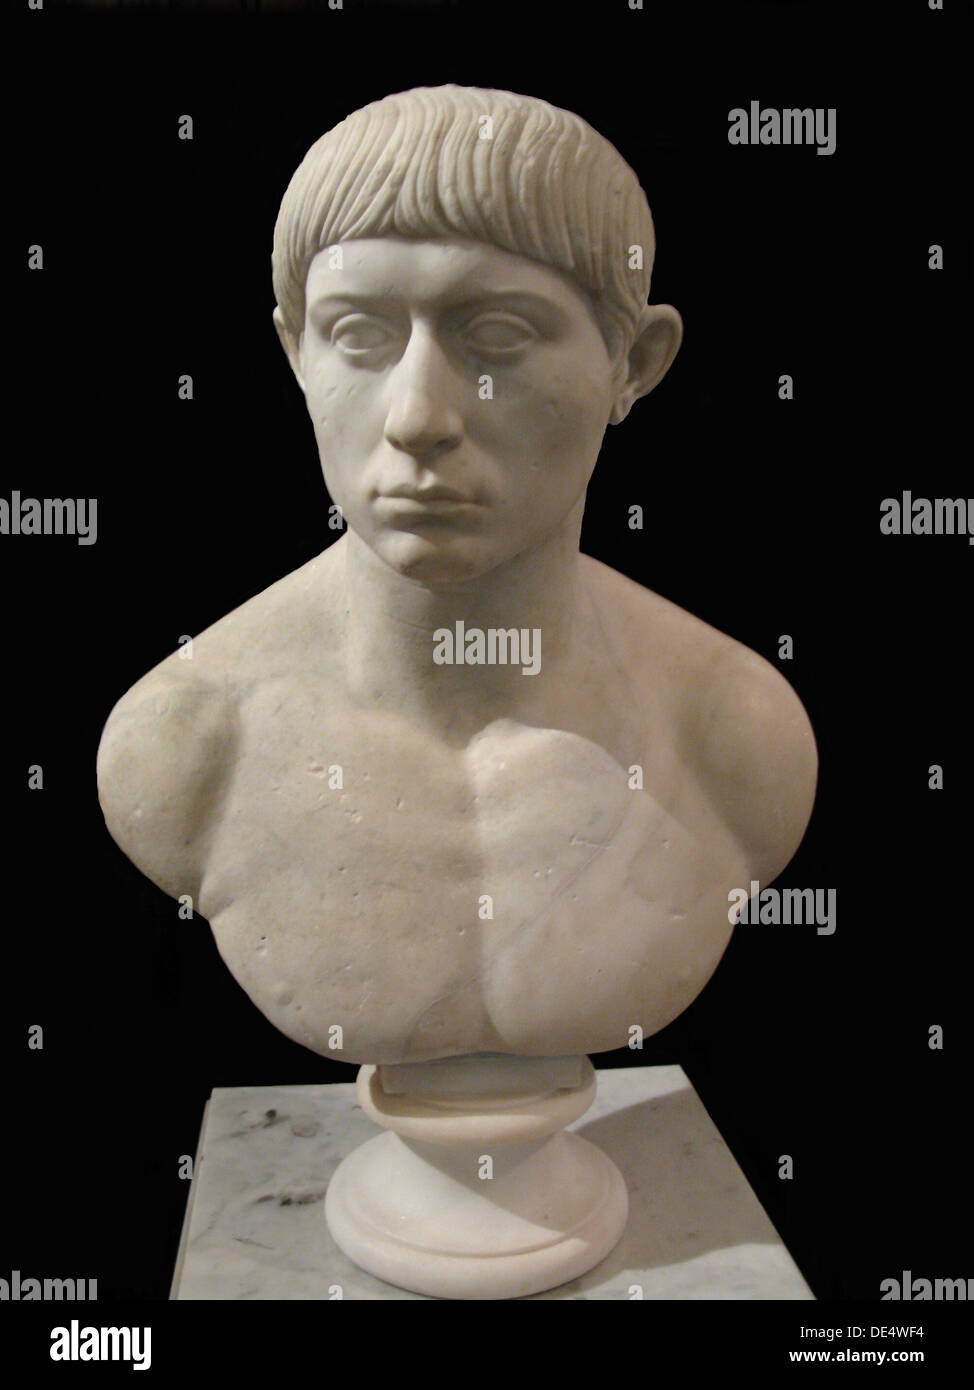 Buste de Brutus, 2e cen. AD. Artiste : l'Art de l'ancienne Rome, la sculpture classique Banque D'Images